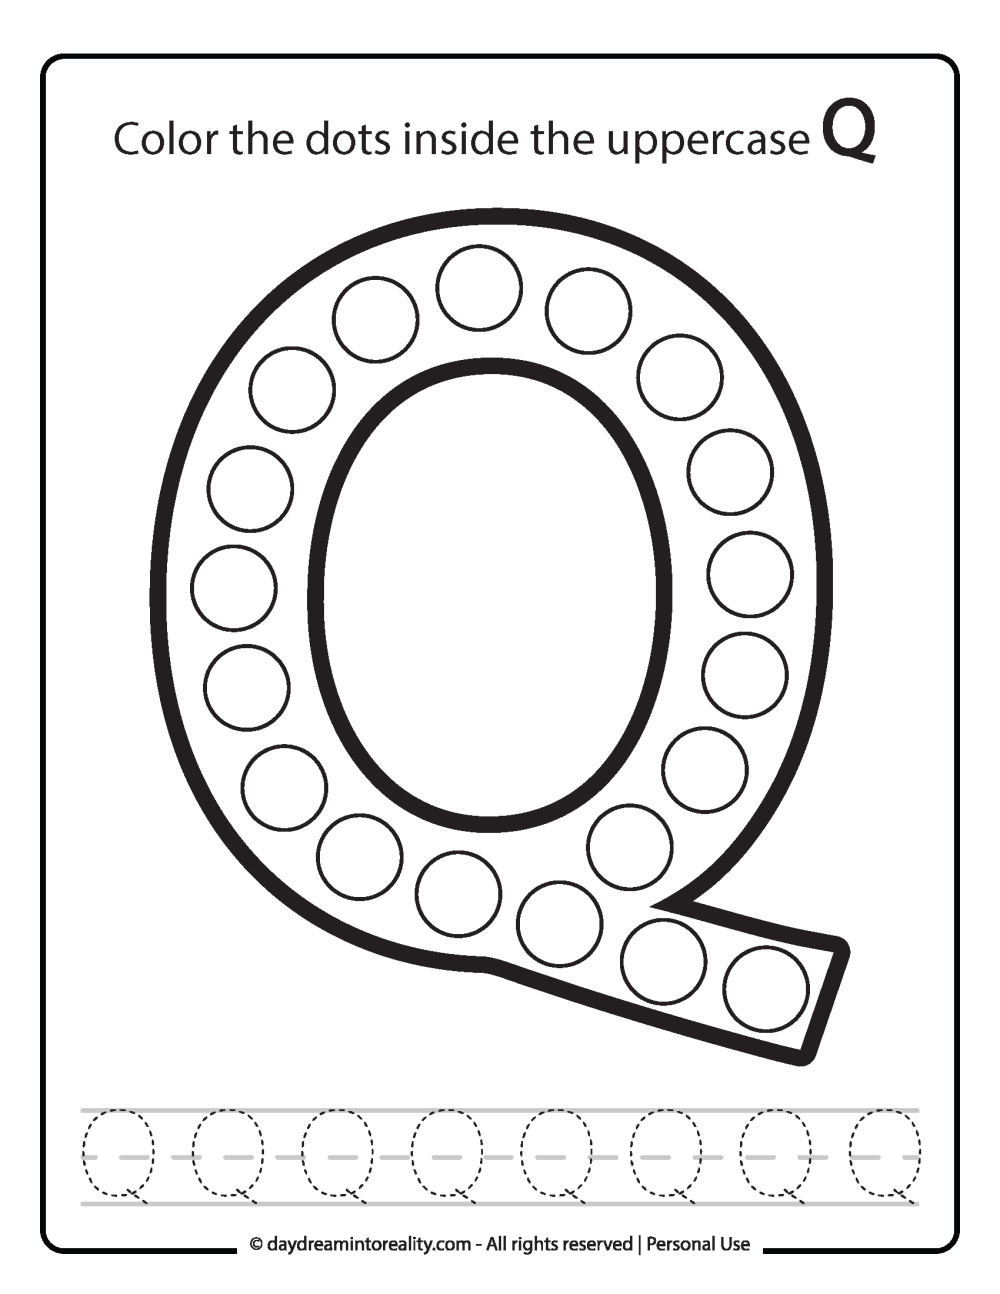 Uppercase "Q" Dot Marker Worksheet Free Printable activity for kids (preschool, kindergarten).